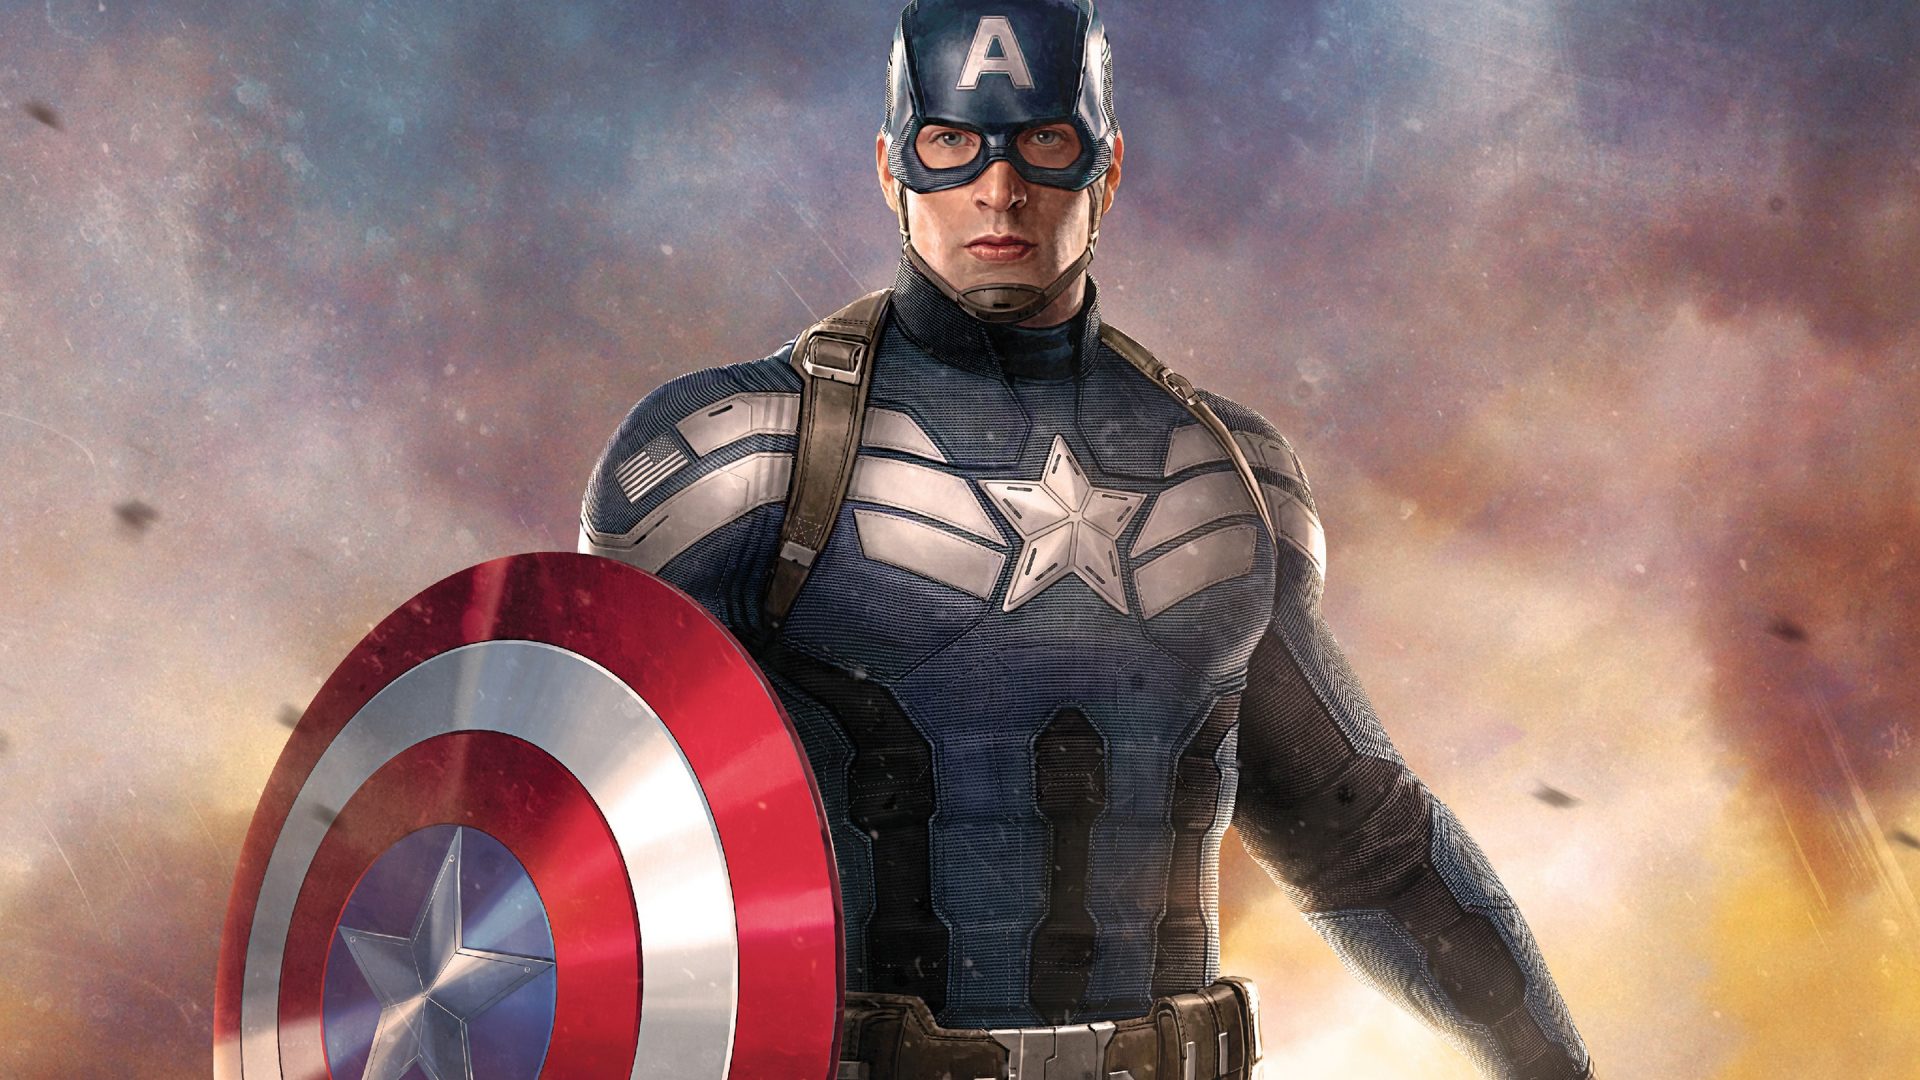 sfondi per captain america hd per cellulare,supereroe,personaggio fittizio,capitano america,film,eroe